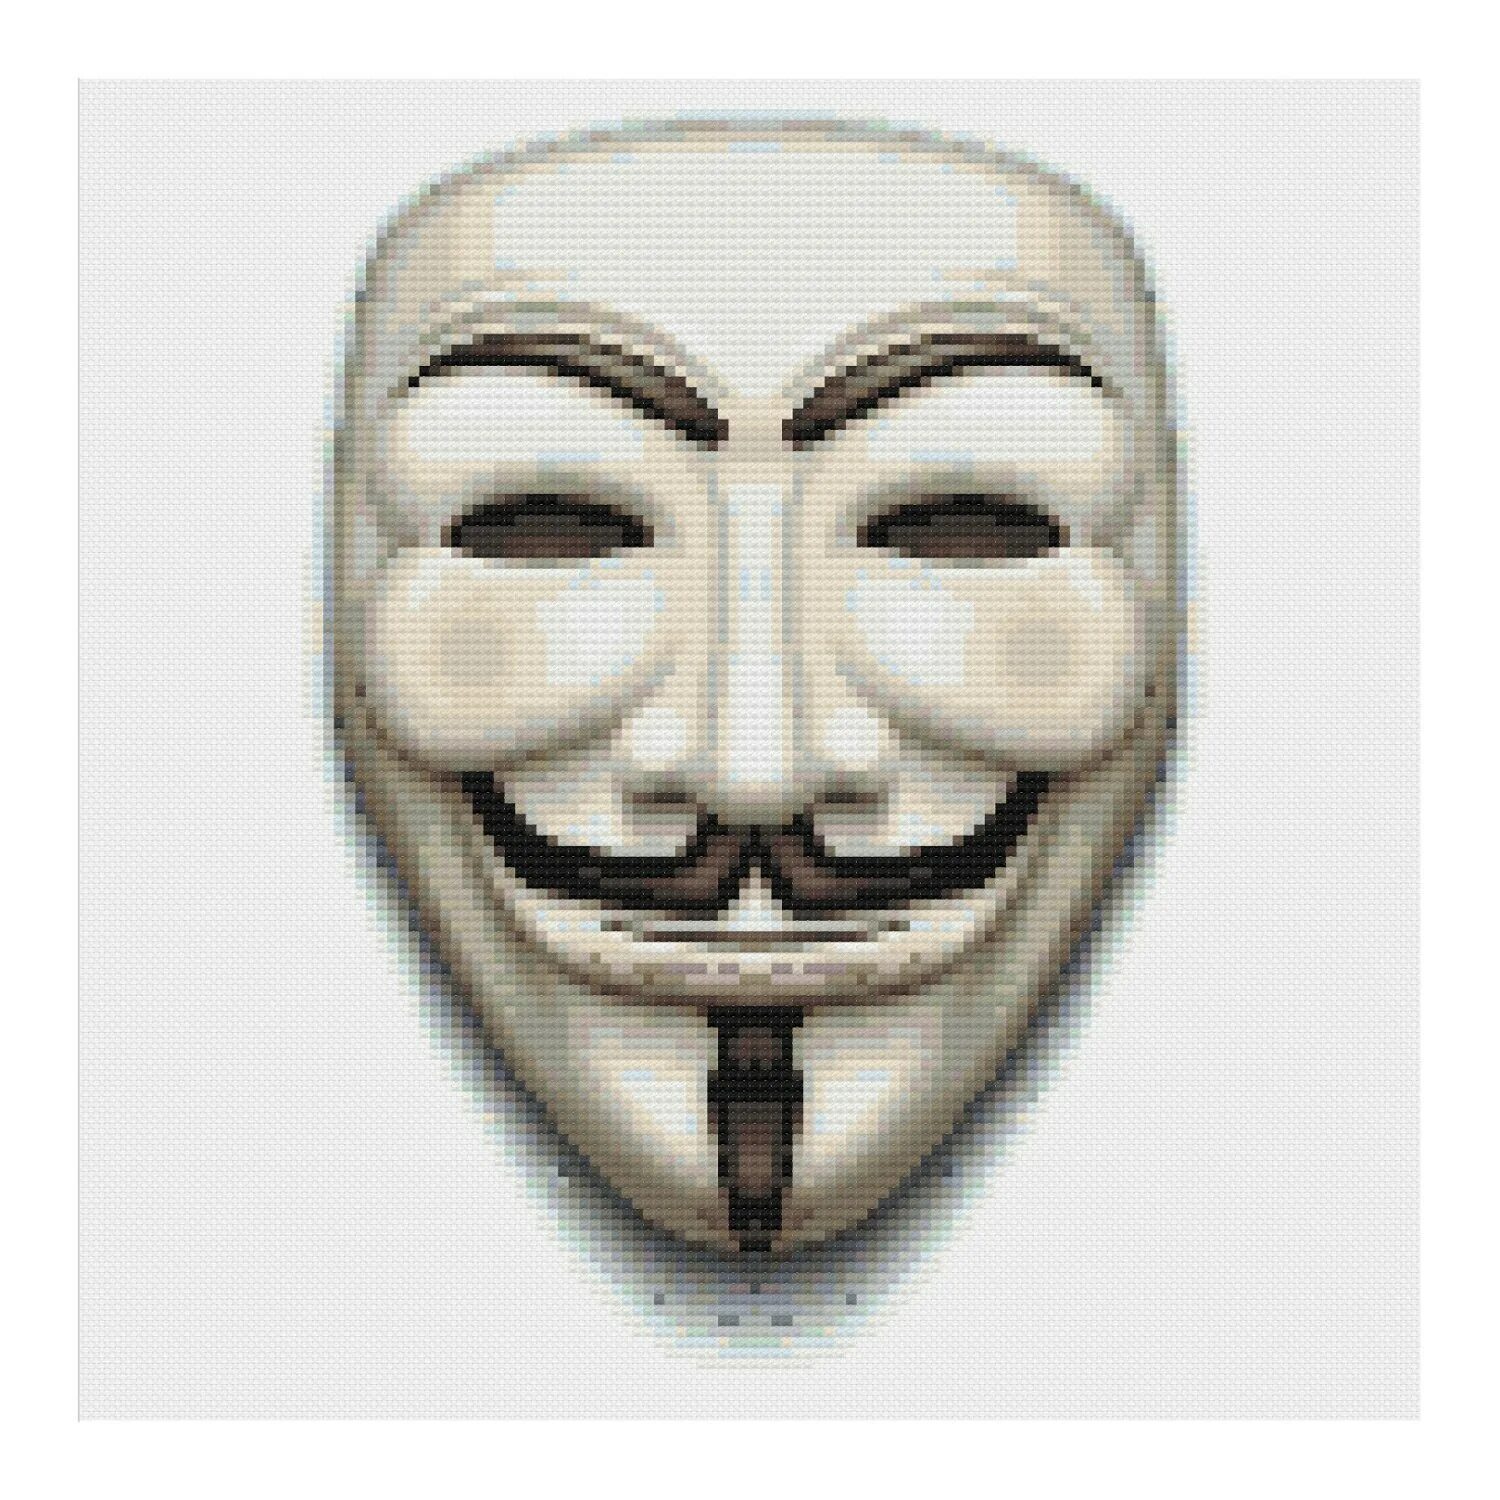 Маска Анонимуса 2д. Анонимус маска пиксельная. Прозрачная маска Анонимуса. Маска Анонимуса пиксель арт. Маска txt